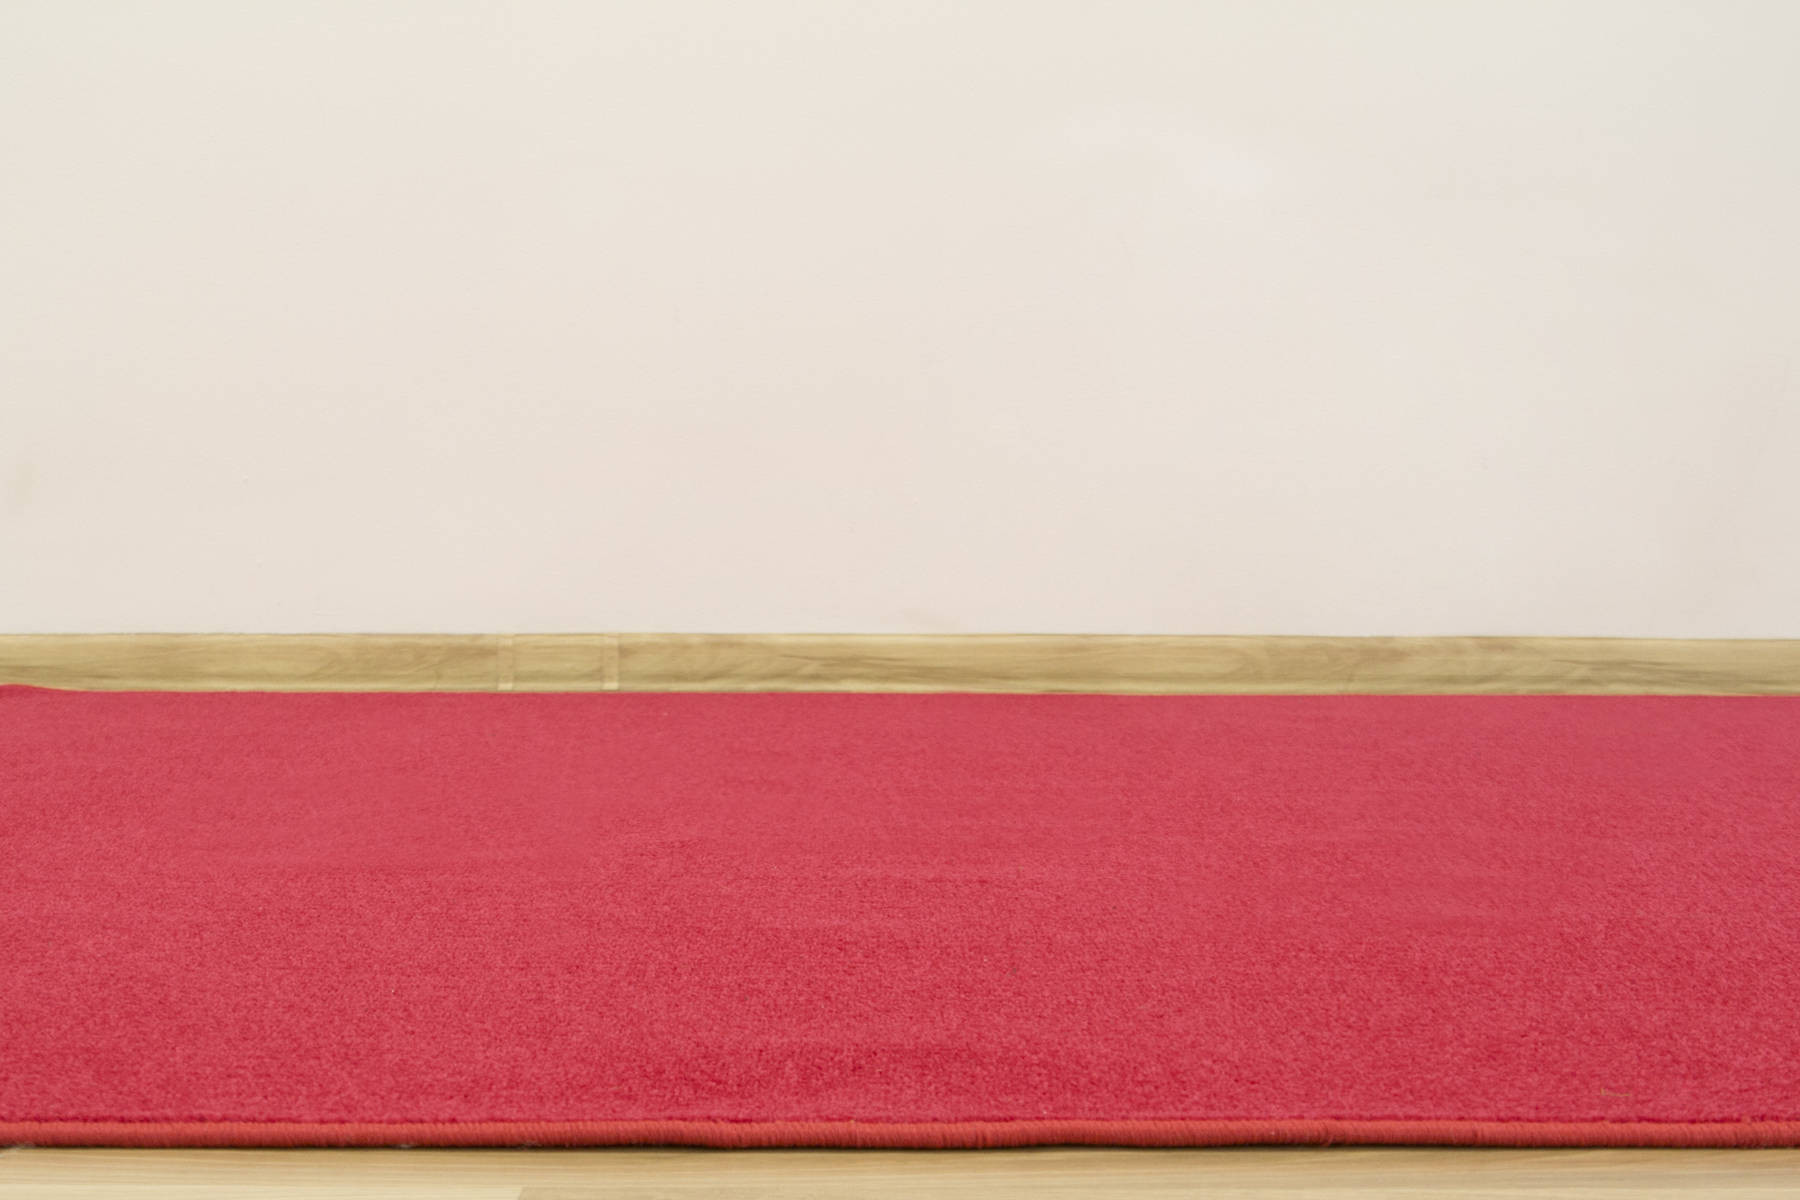 Metražný koberec Tiffany 120 červený